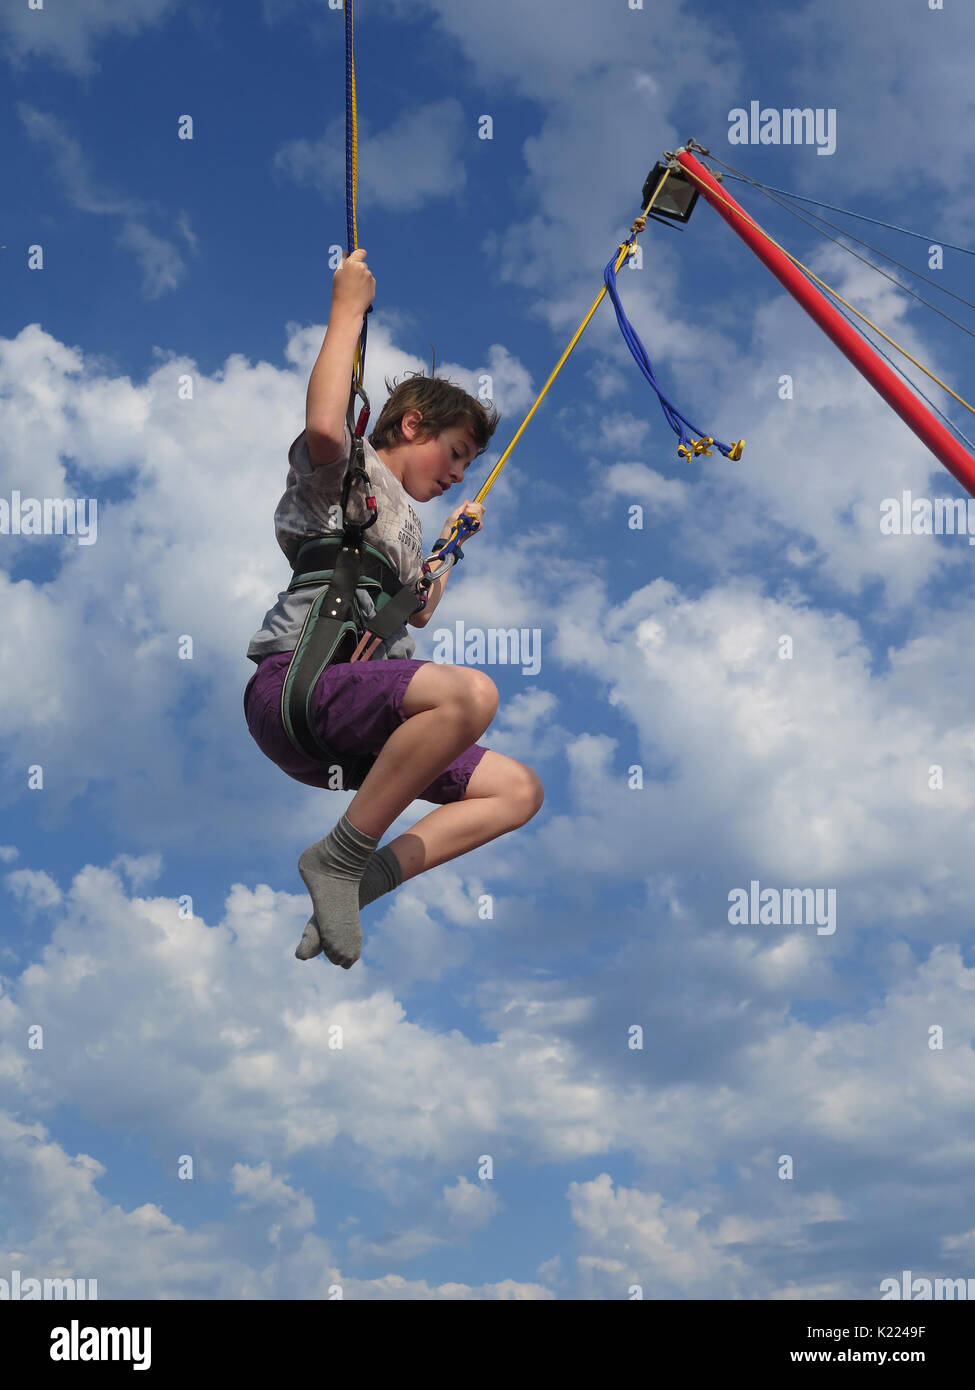 Junge springt auf einem Trampolin auf Bournemouth Pier Stockfoto